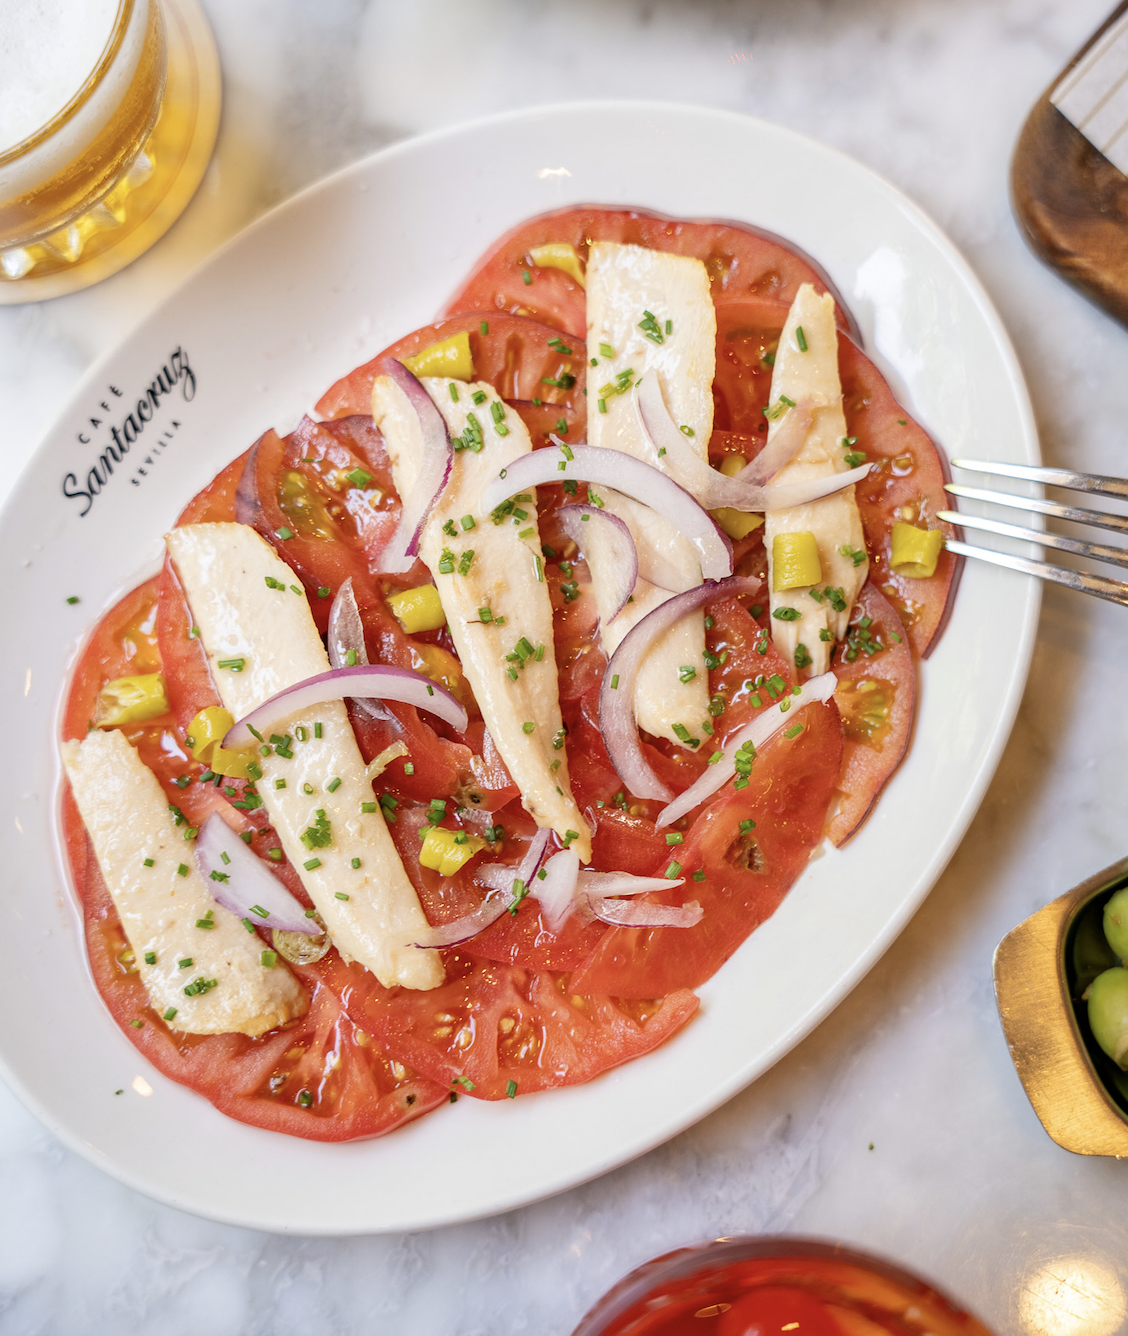 쪽파, 피파라스, 참치 뱃살로 양념한 토마토